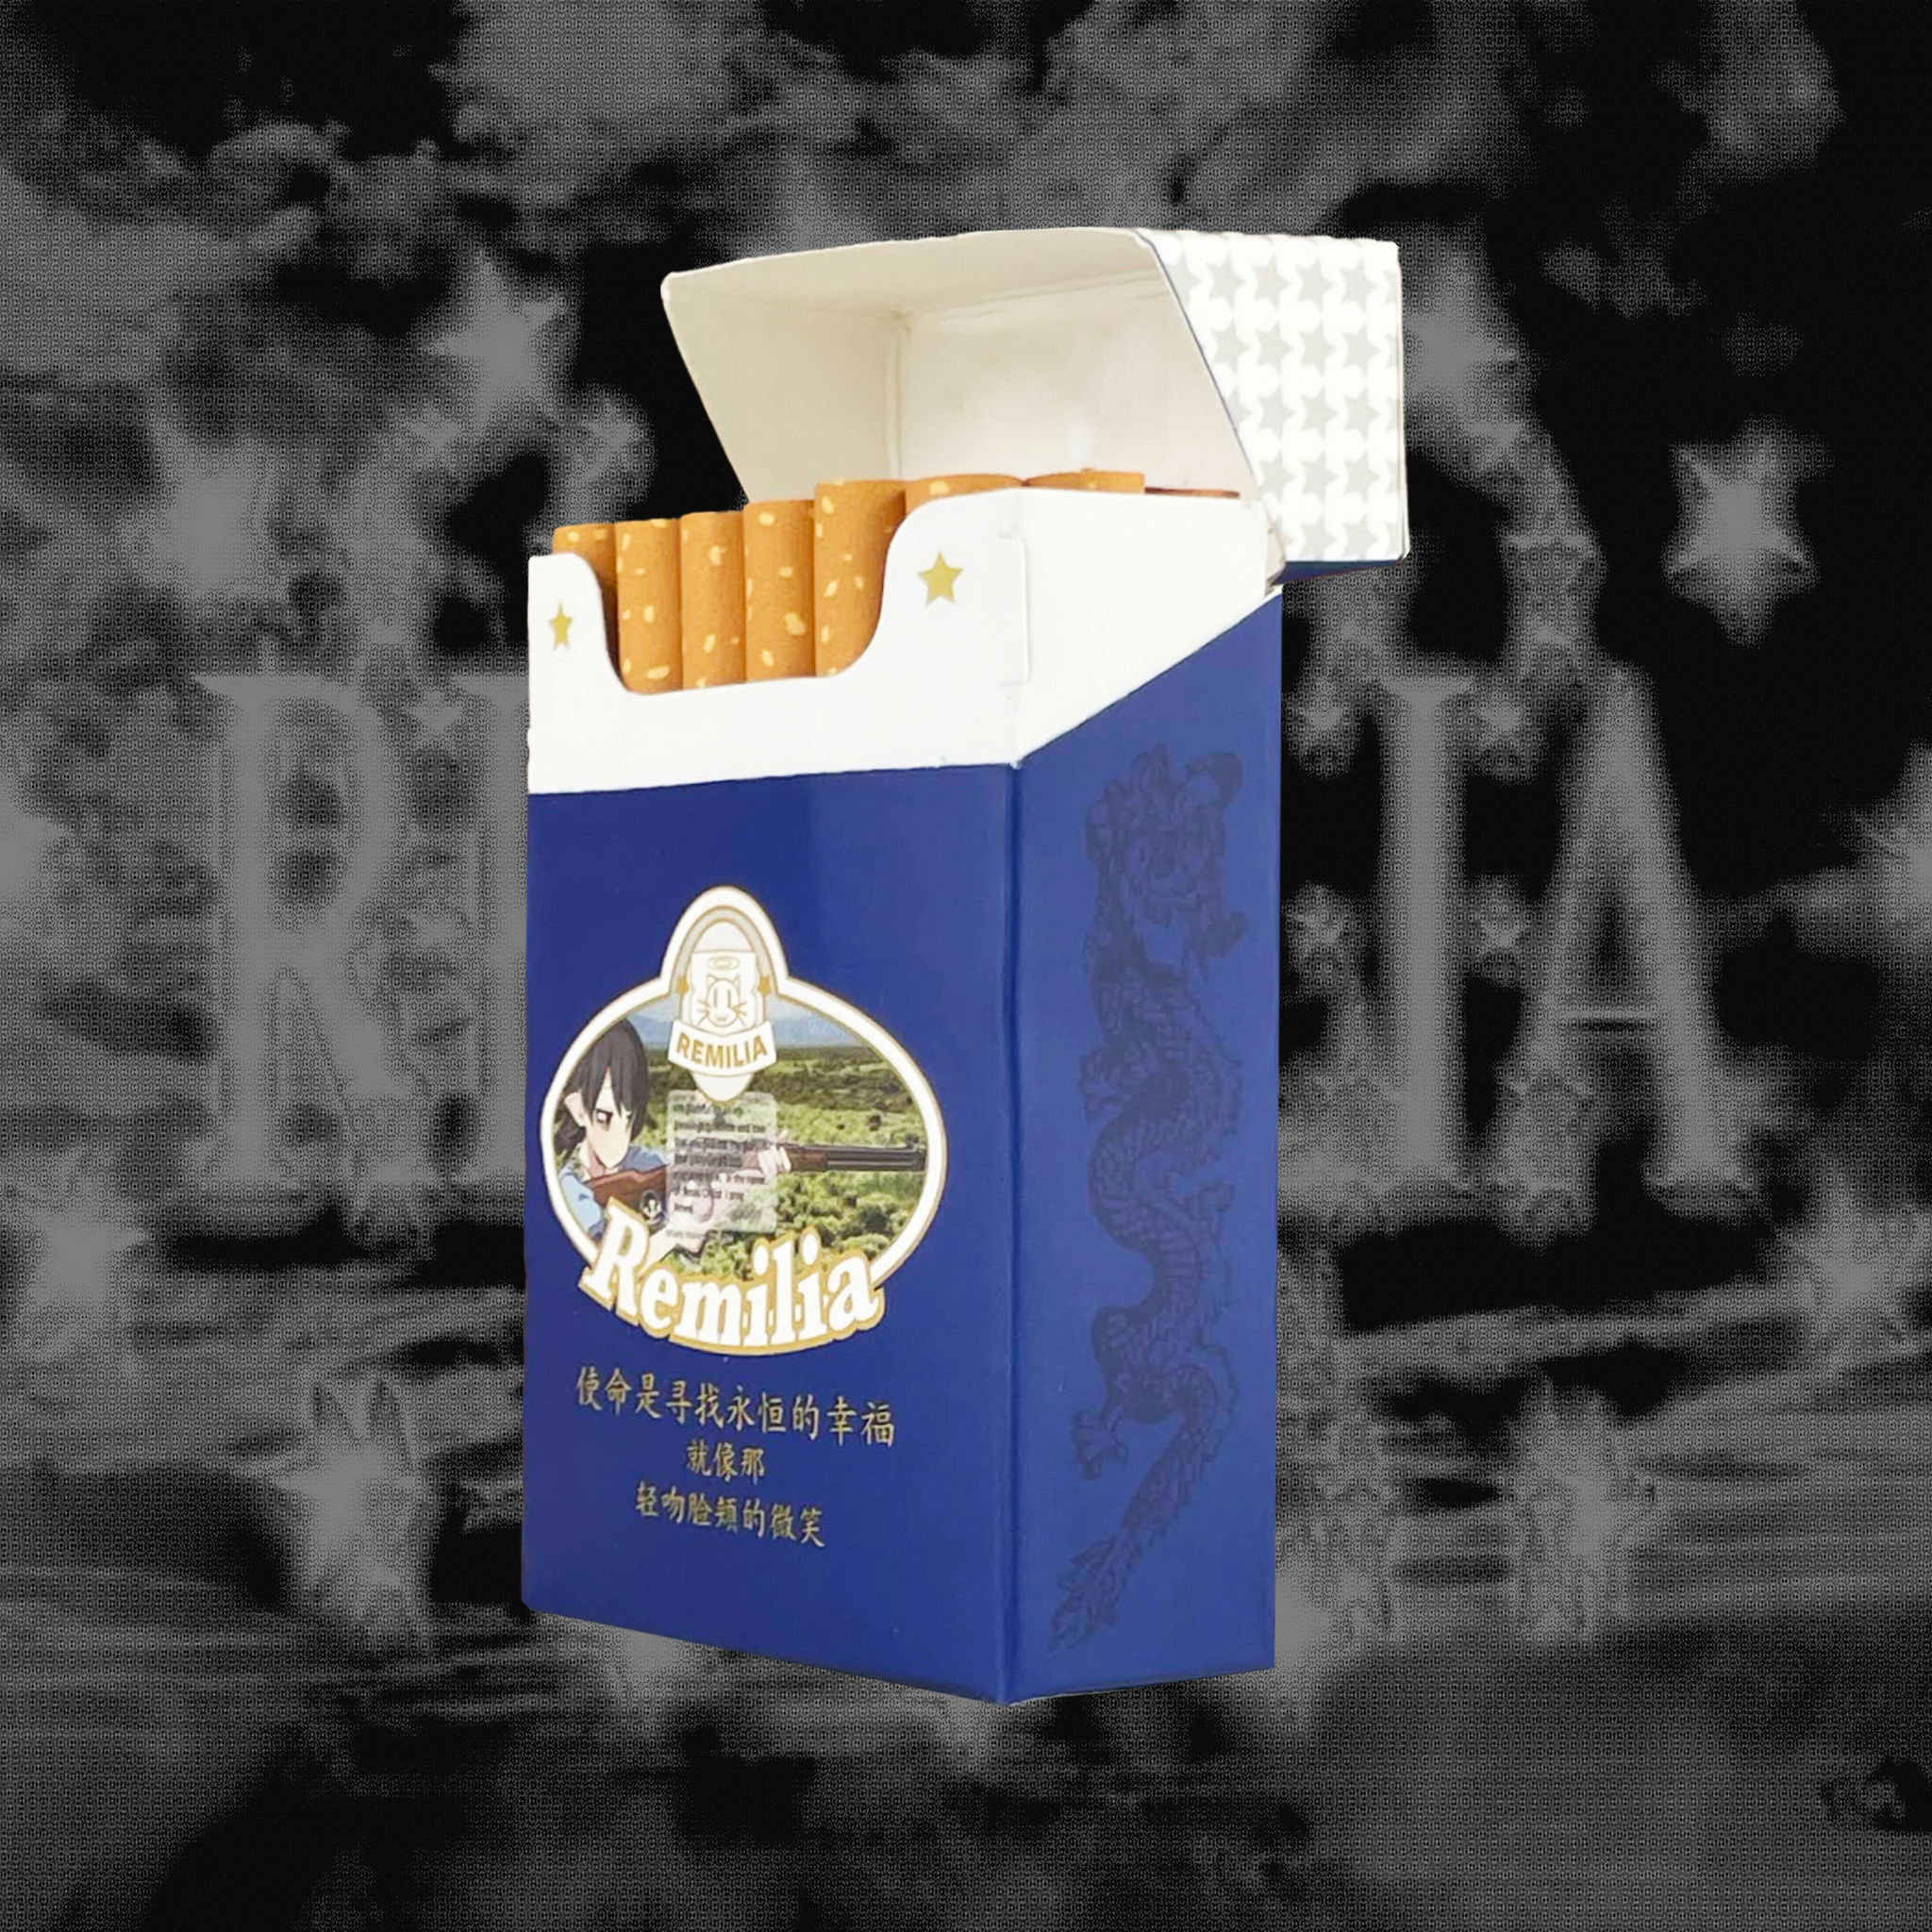 Remilia Cigarette Cases